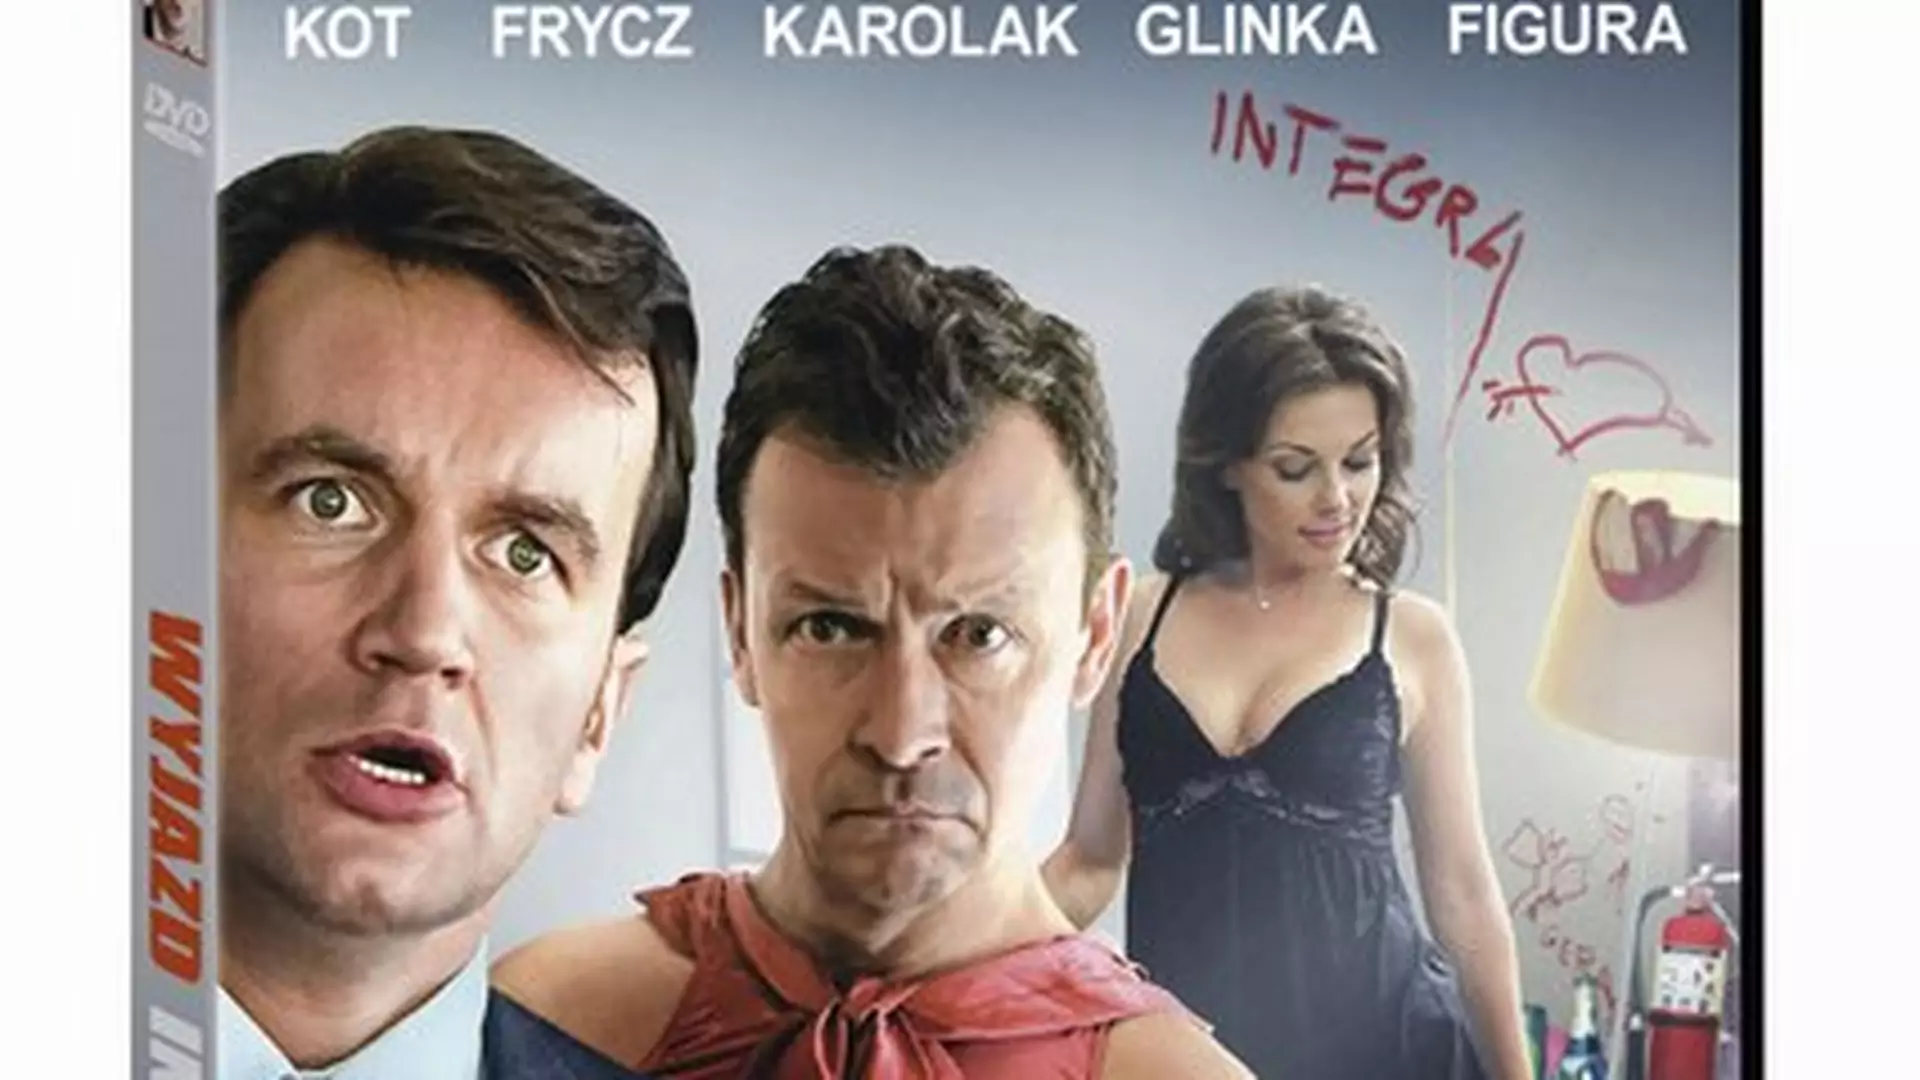 Wyjazd Integracyjny - polska komedia już na DVD